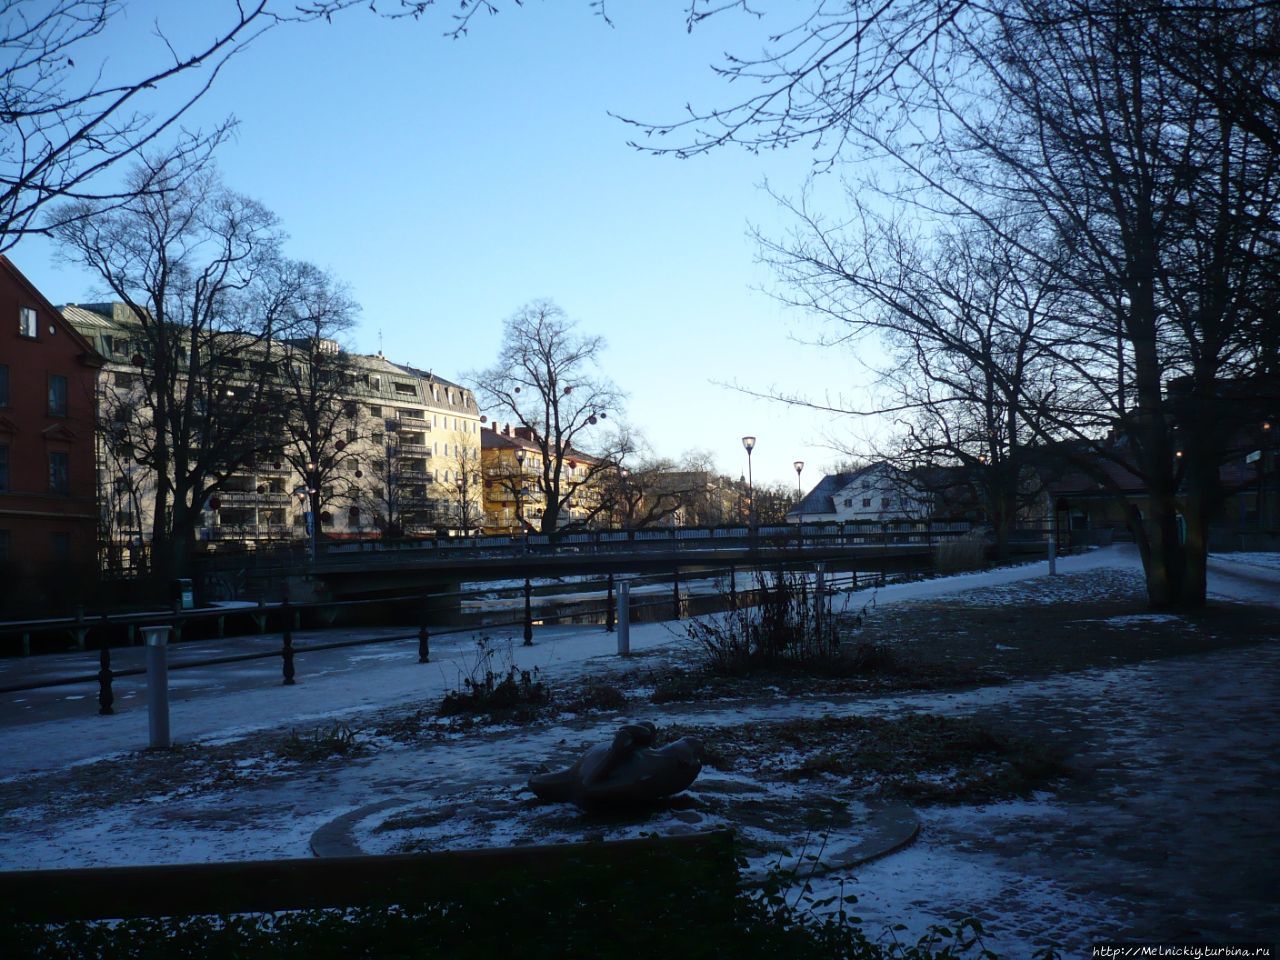 Новогодняя прогулка по древнему шведскому городу Уппсала, Швеция